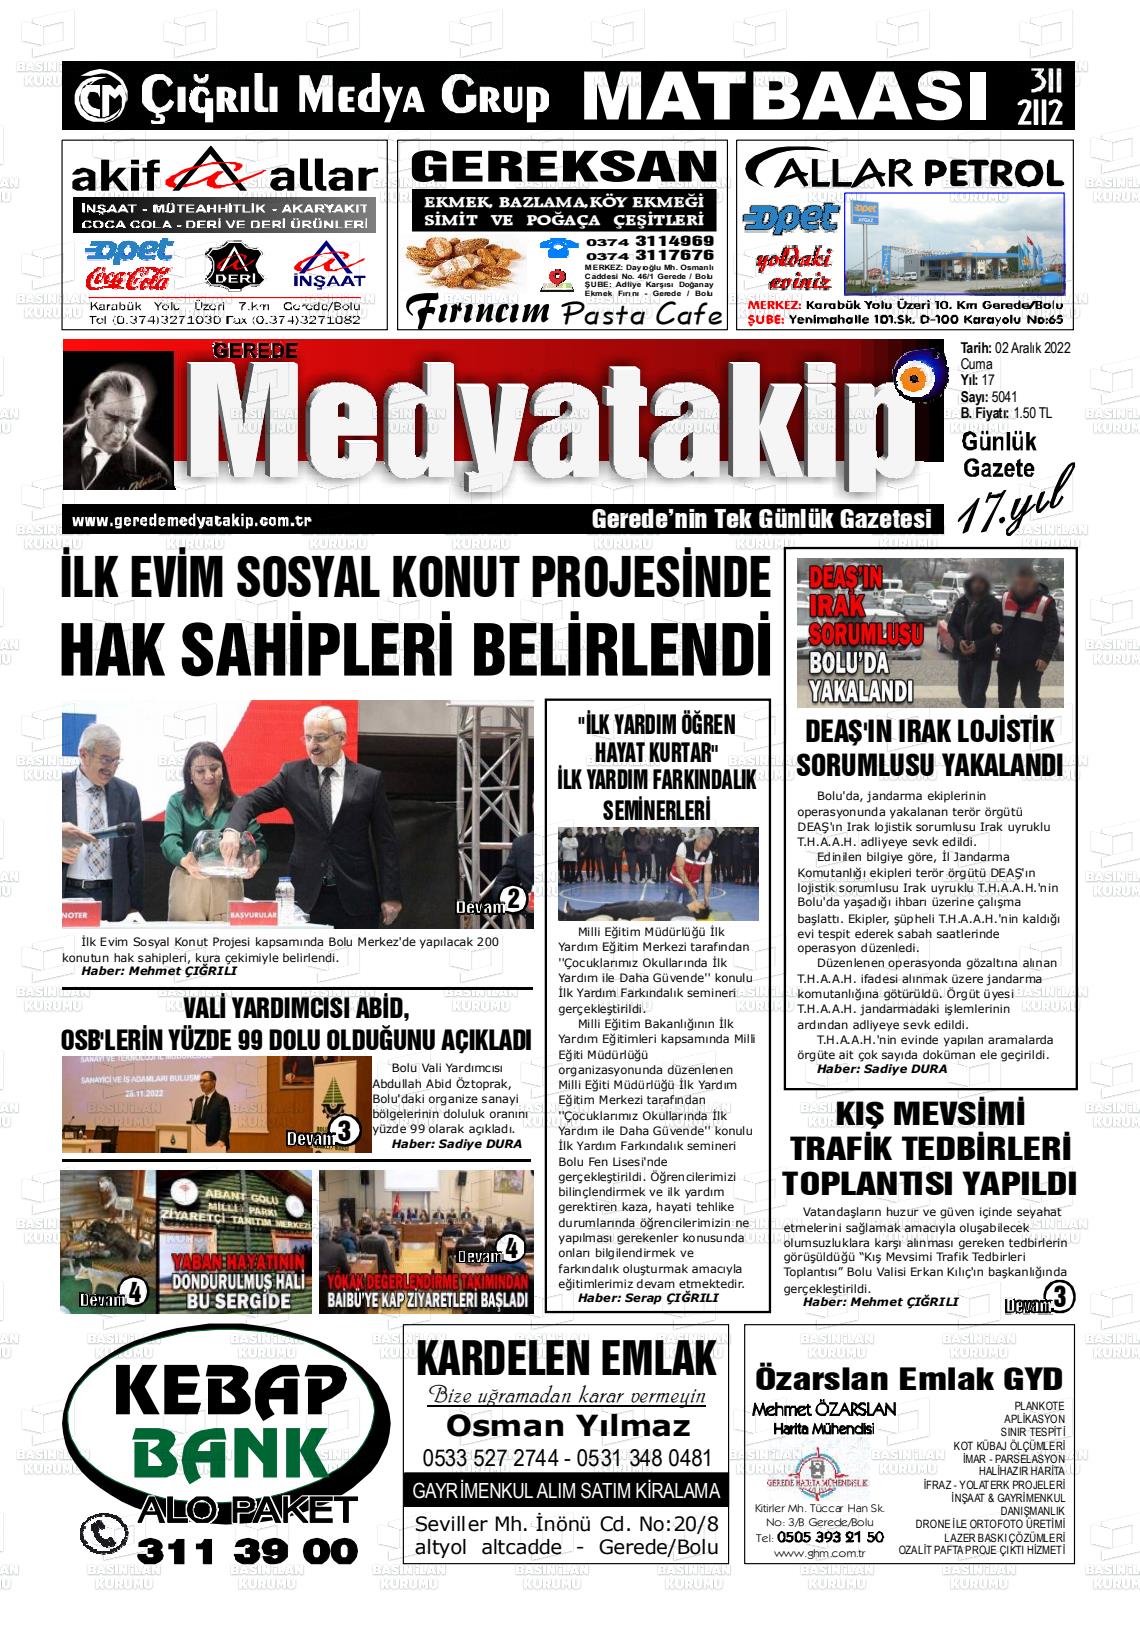 02 Aralık 2022 Gerede Medya Takip Gazete Manşeti